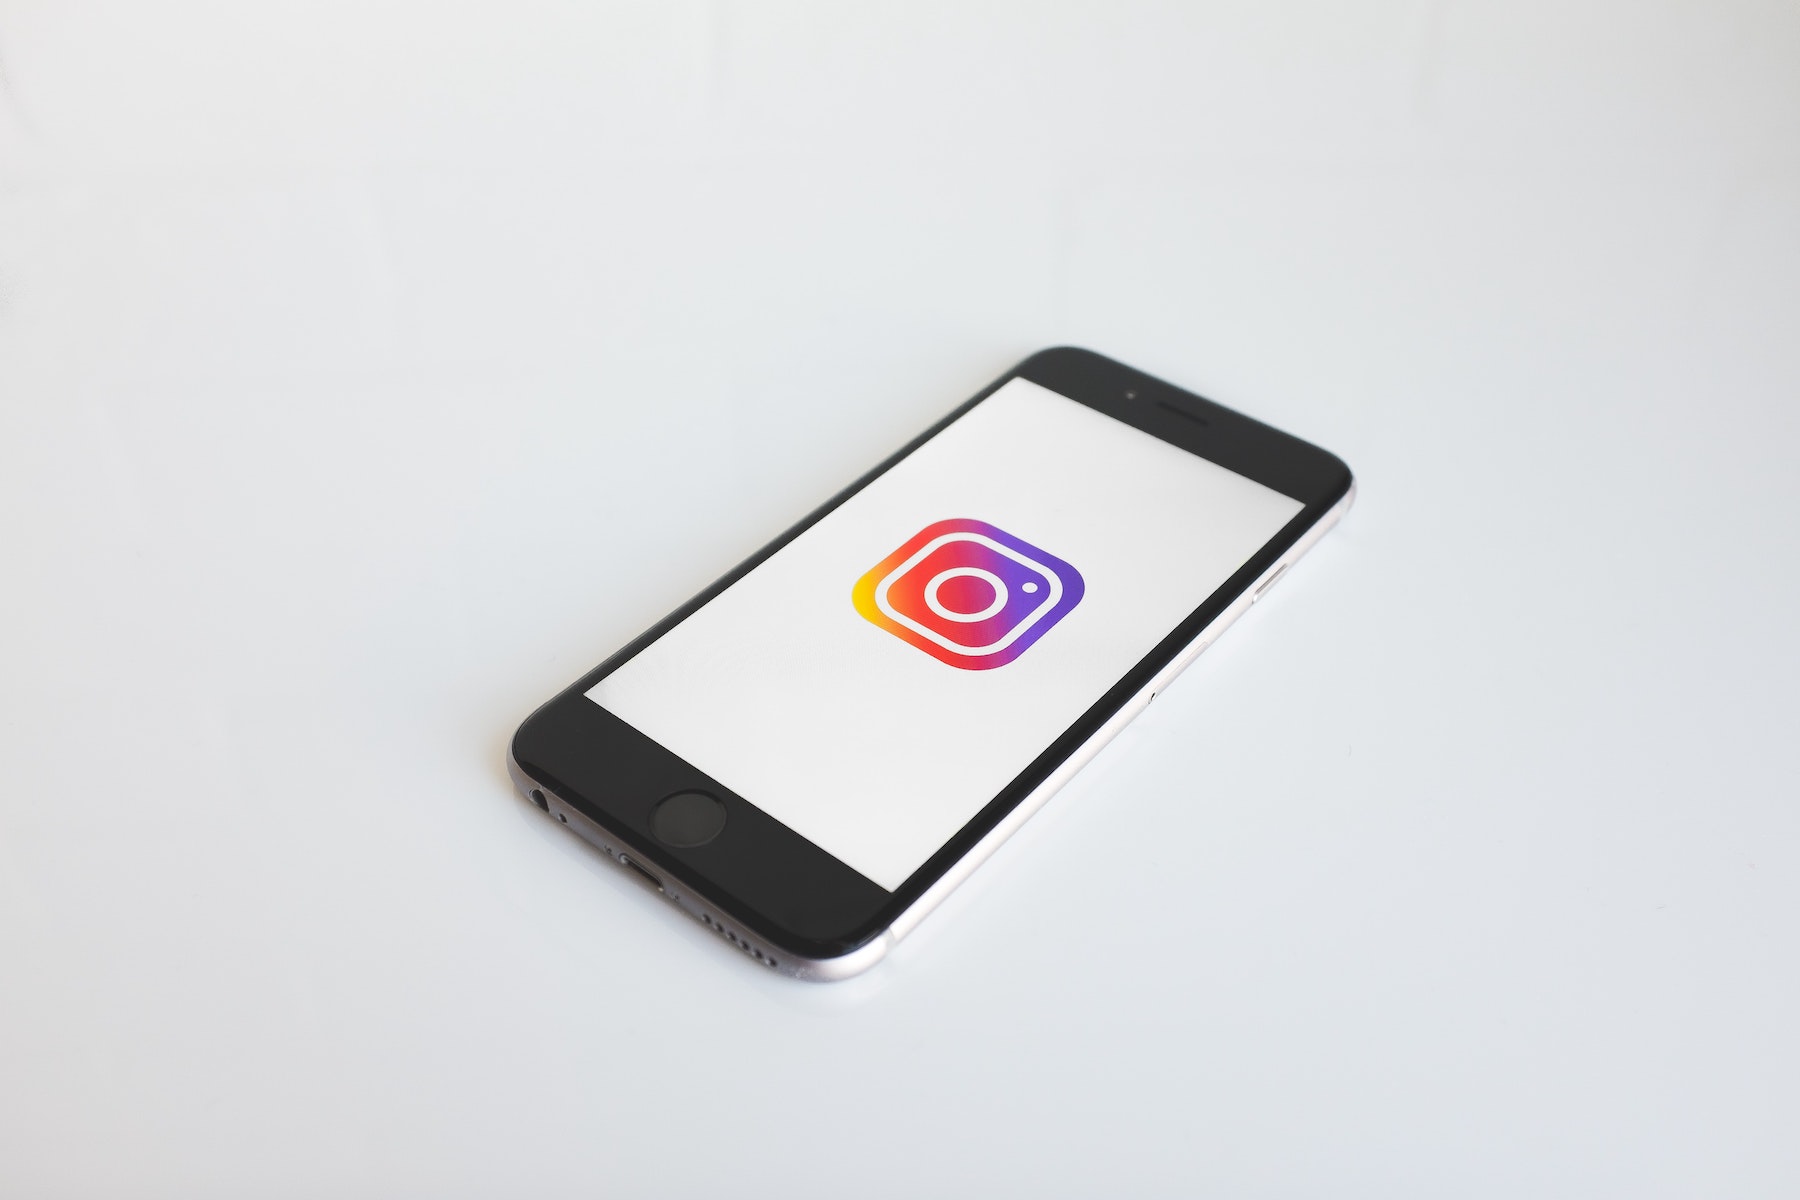 Photographie d'un smartphone avec le logo Instagram, première étape avant de pouvoir créer son compte.